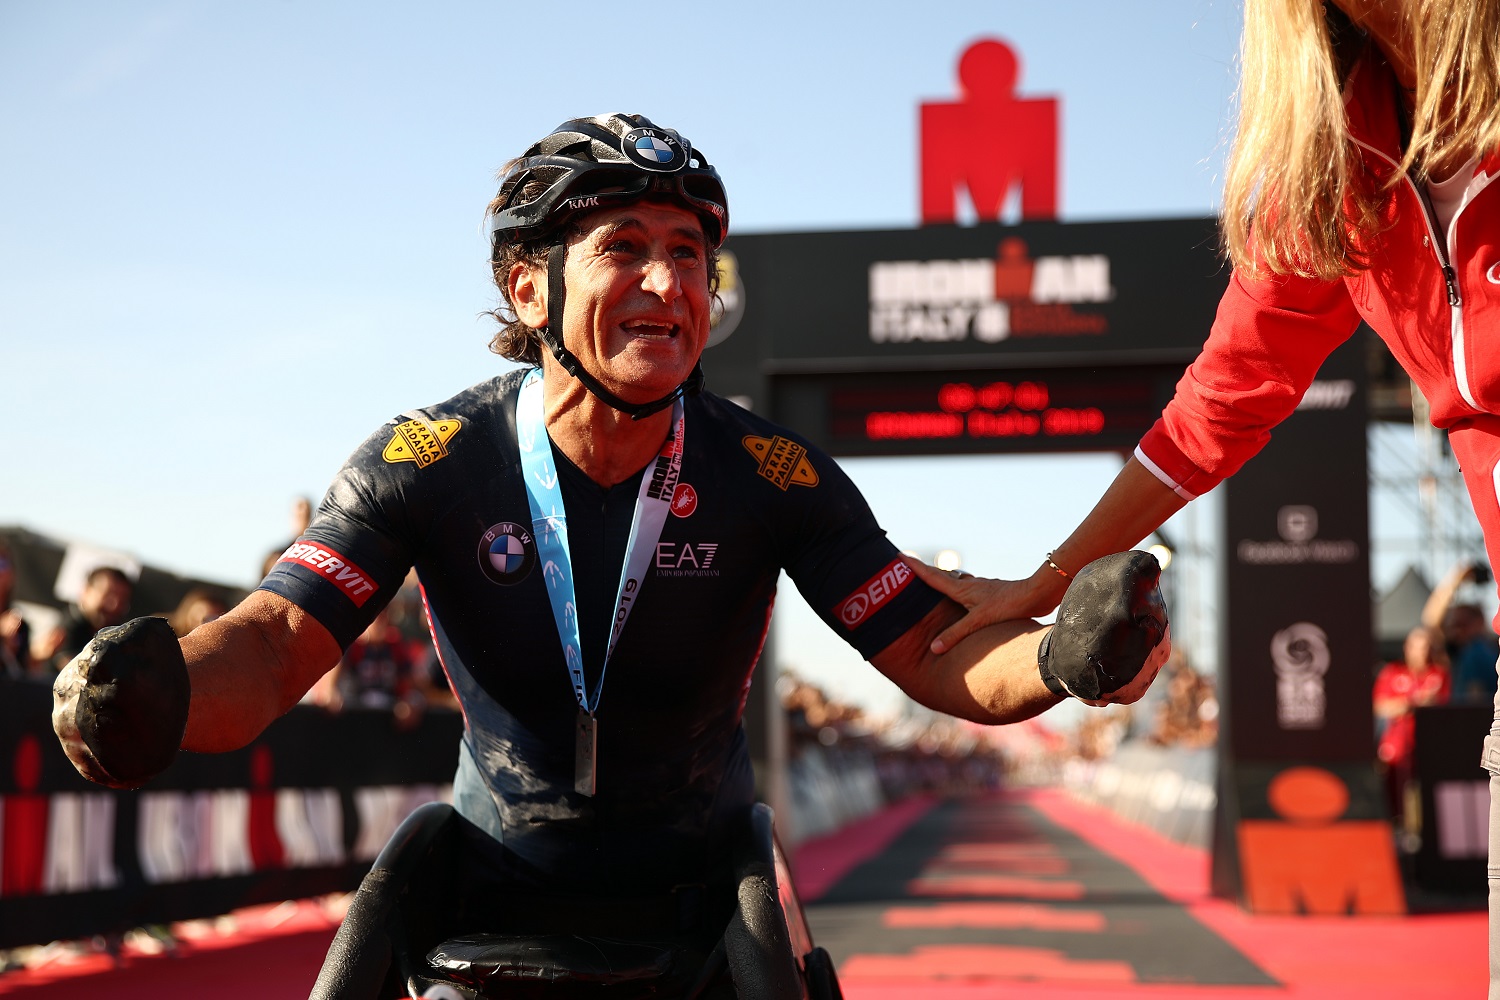 Alex Zanardi of Italy celebrates finishing Ironman Italy on Sept. 21, 2019, in Cervia, Italy.